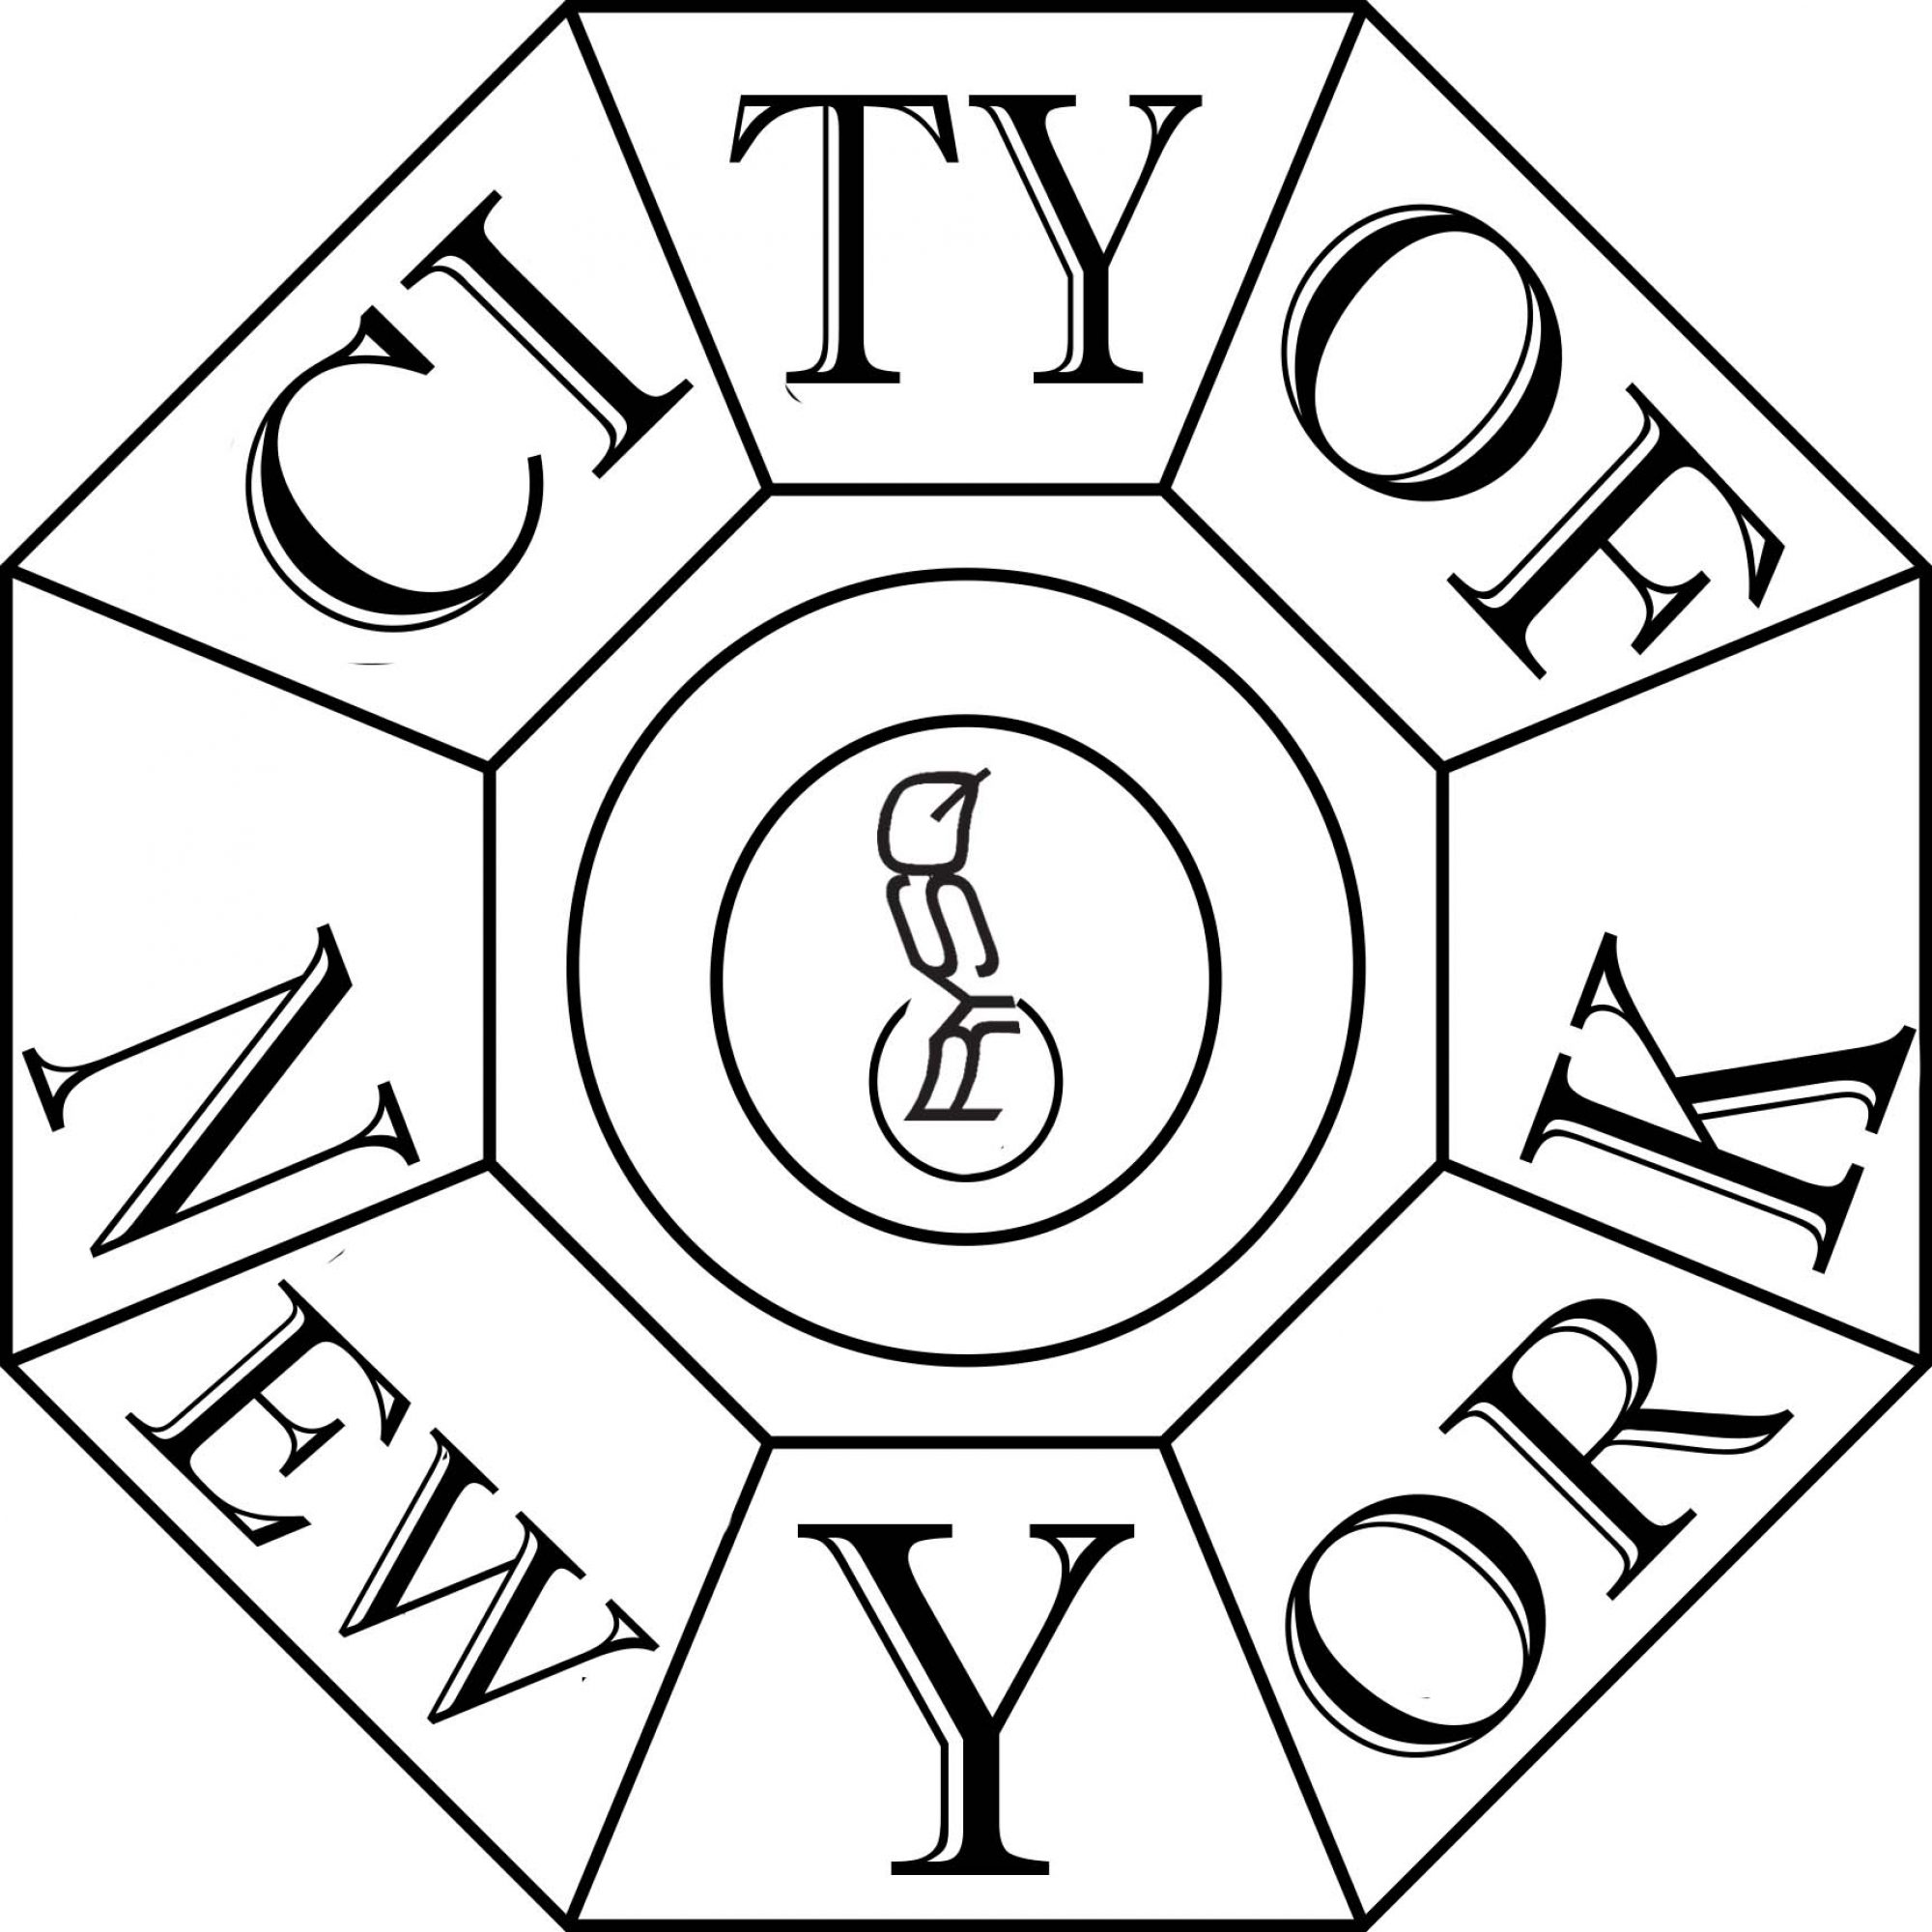 City of NY Button_v3